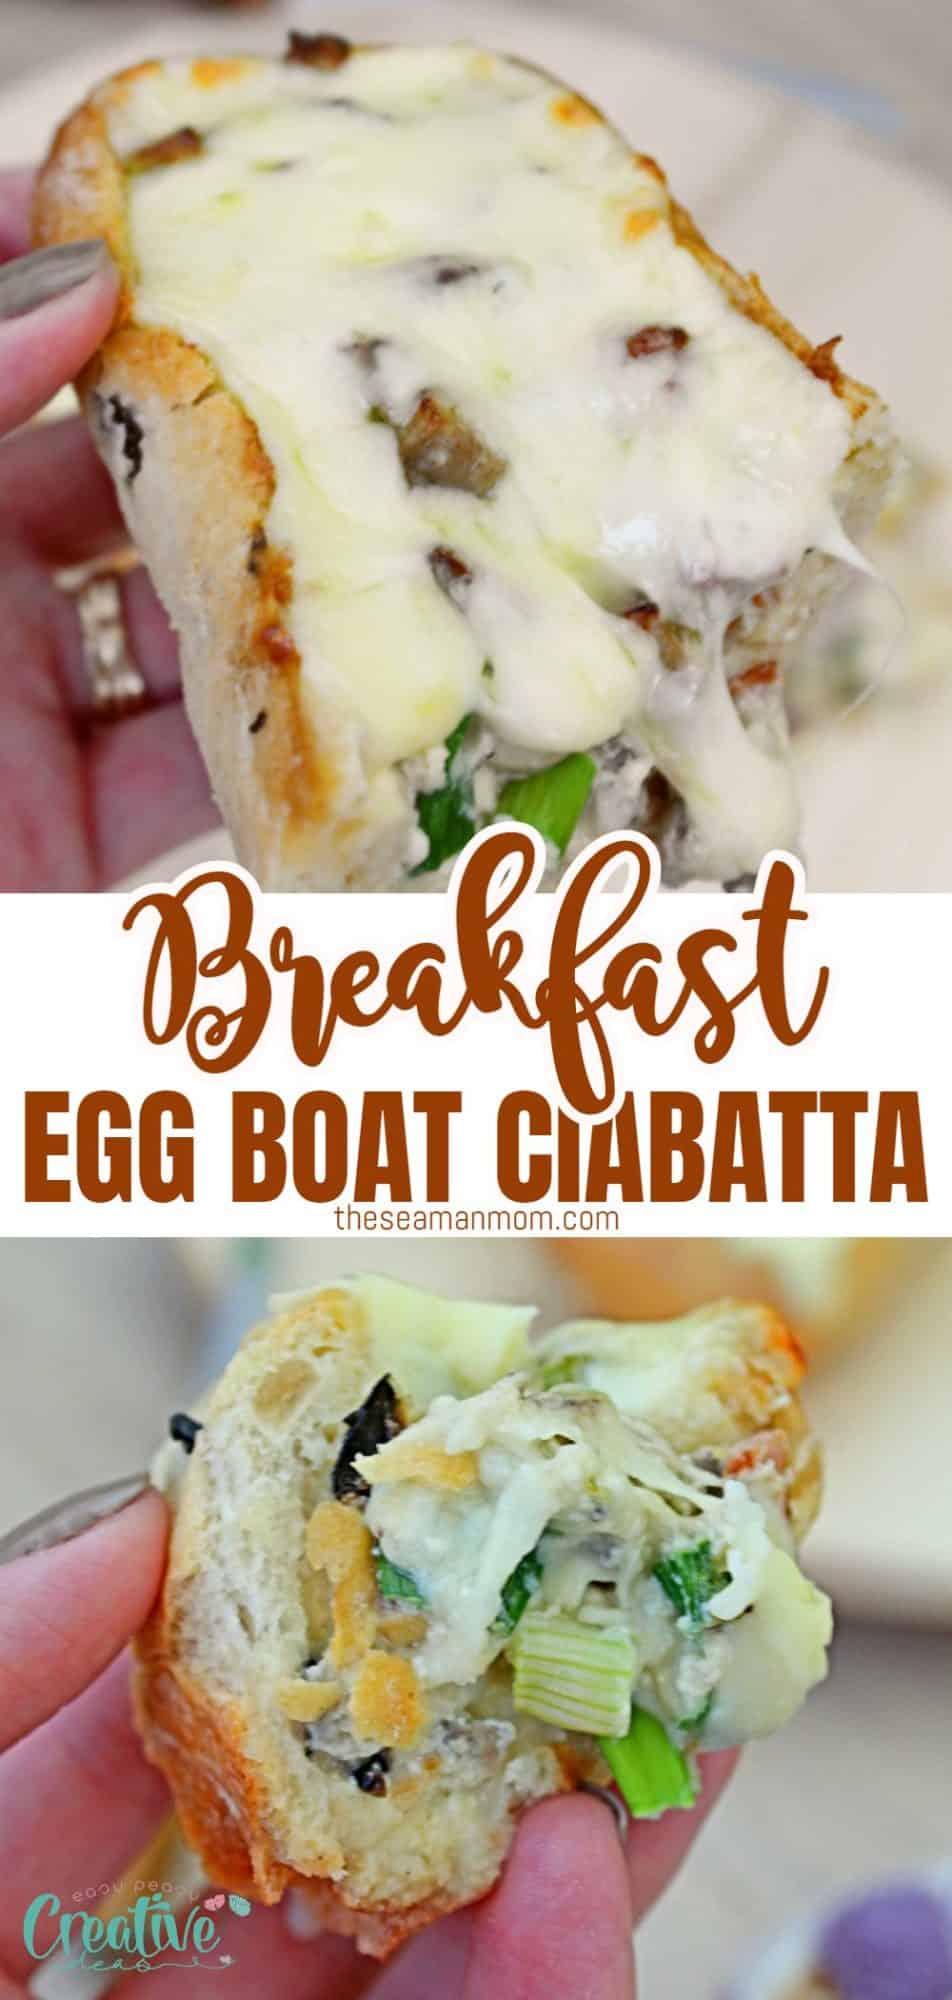 Breakfast egg boat recipe